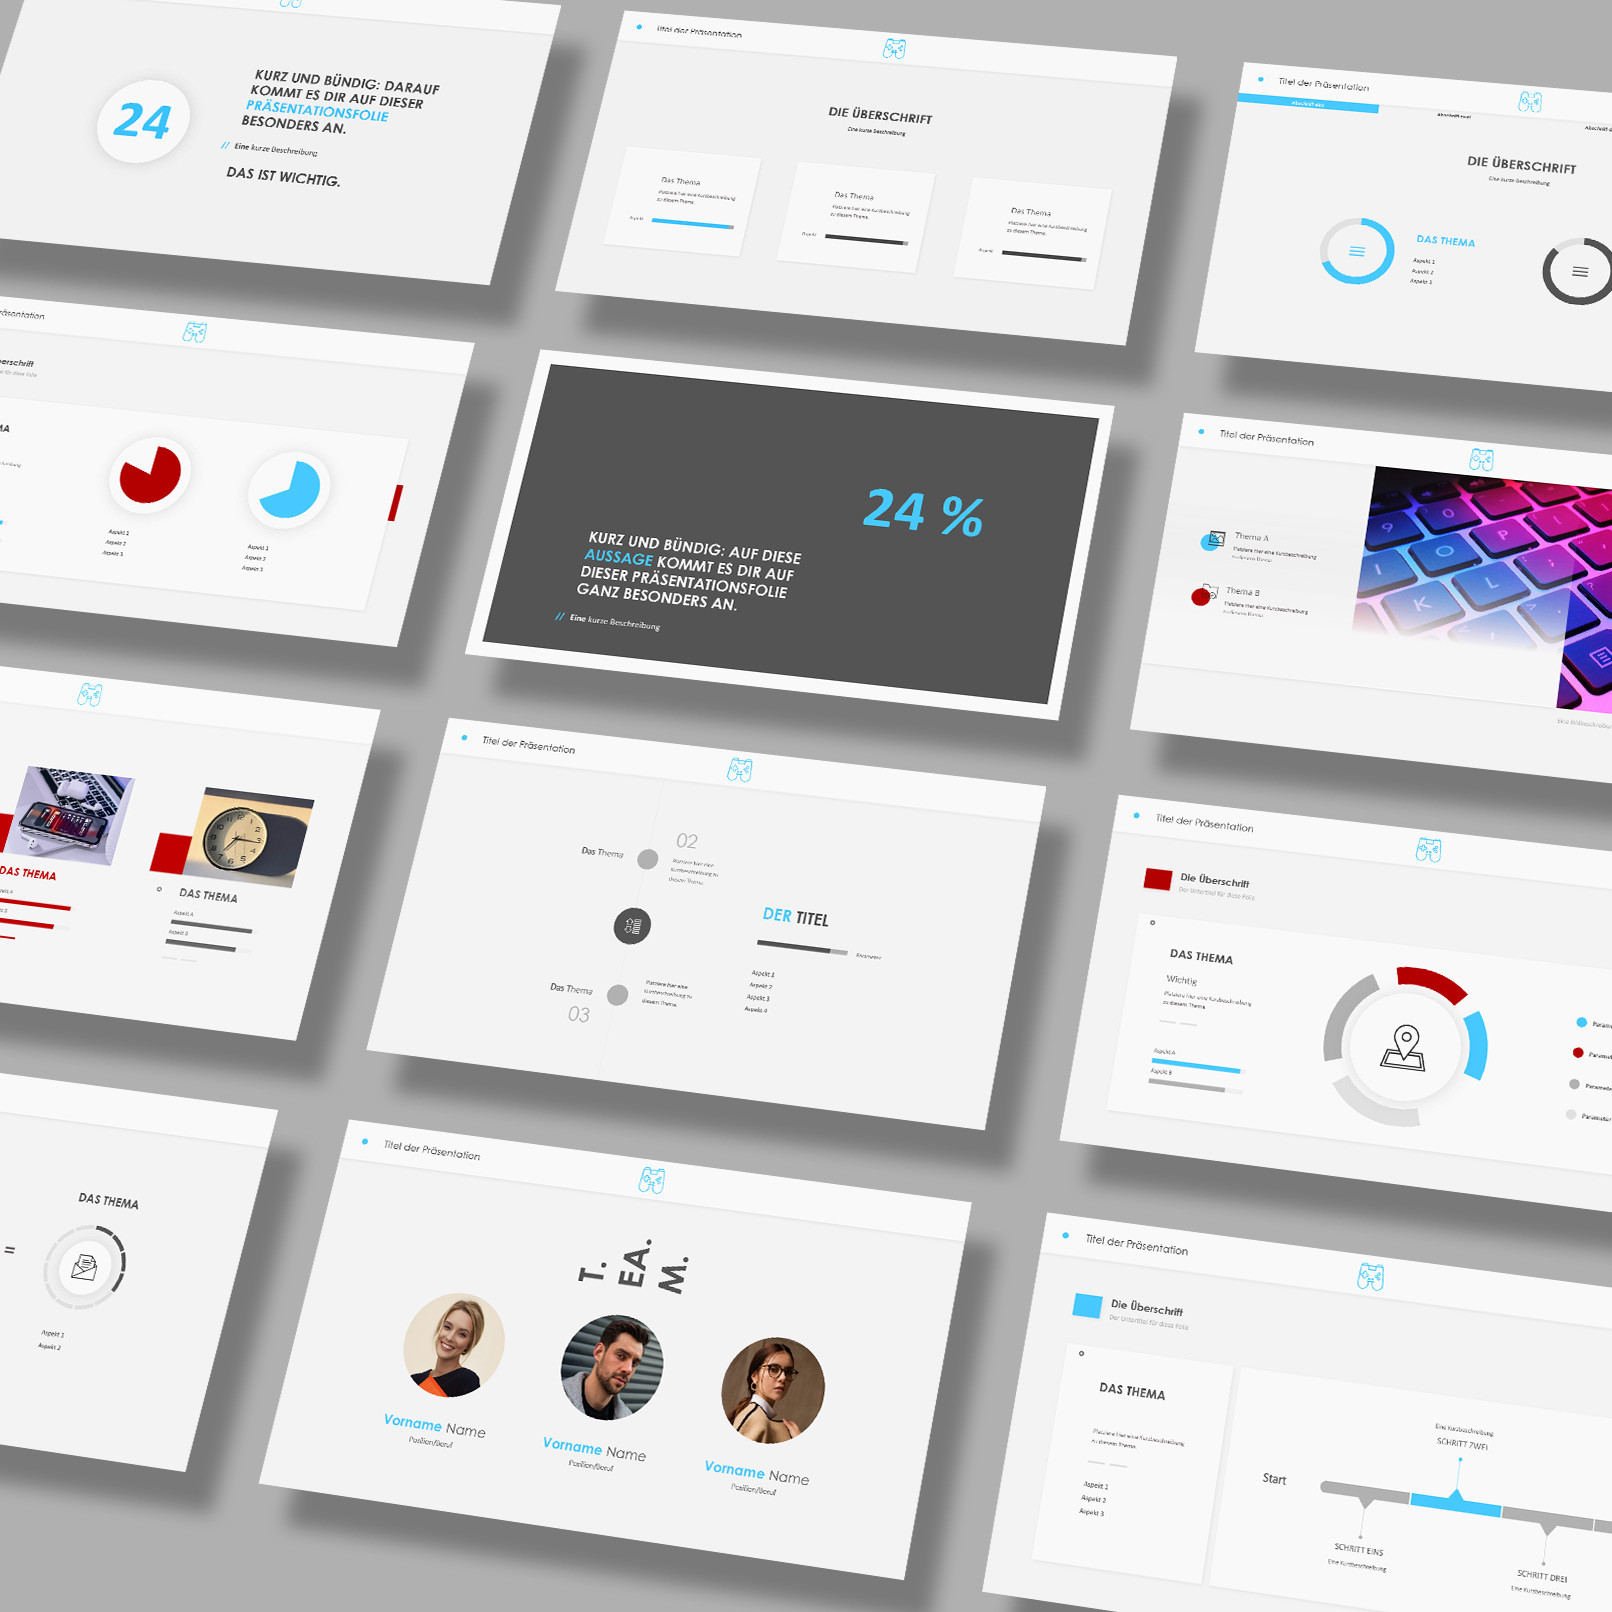 Folien-Templates im Play-Design für PowerPoint, Google Slides und Keynote